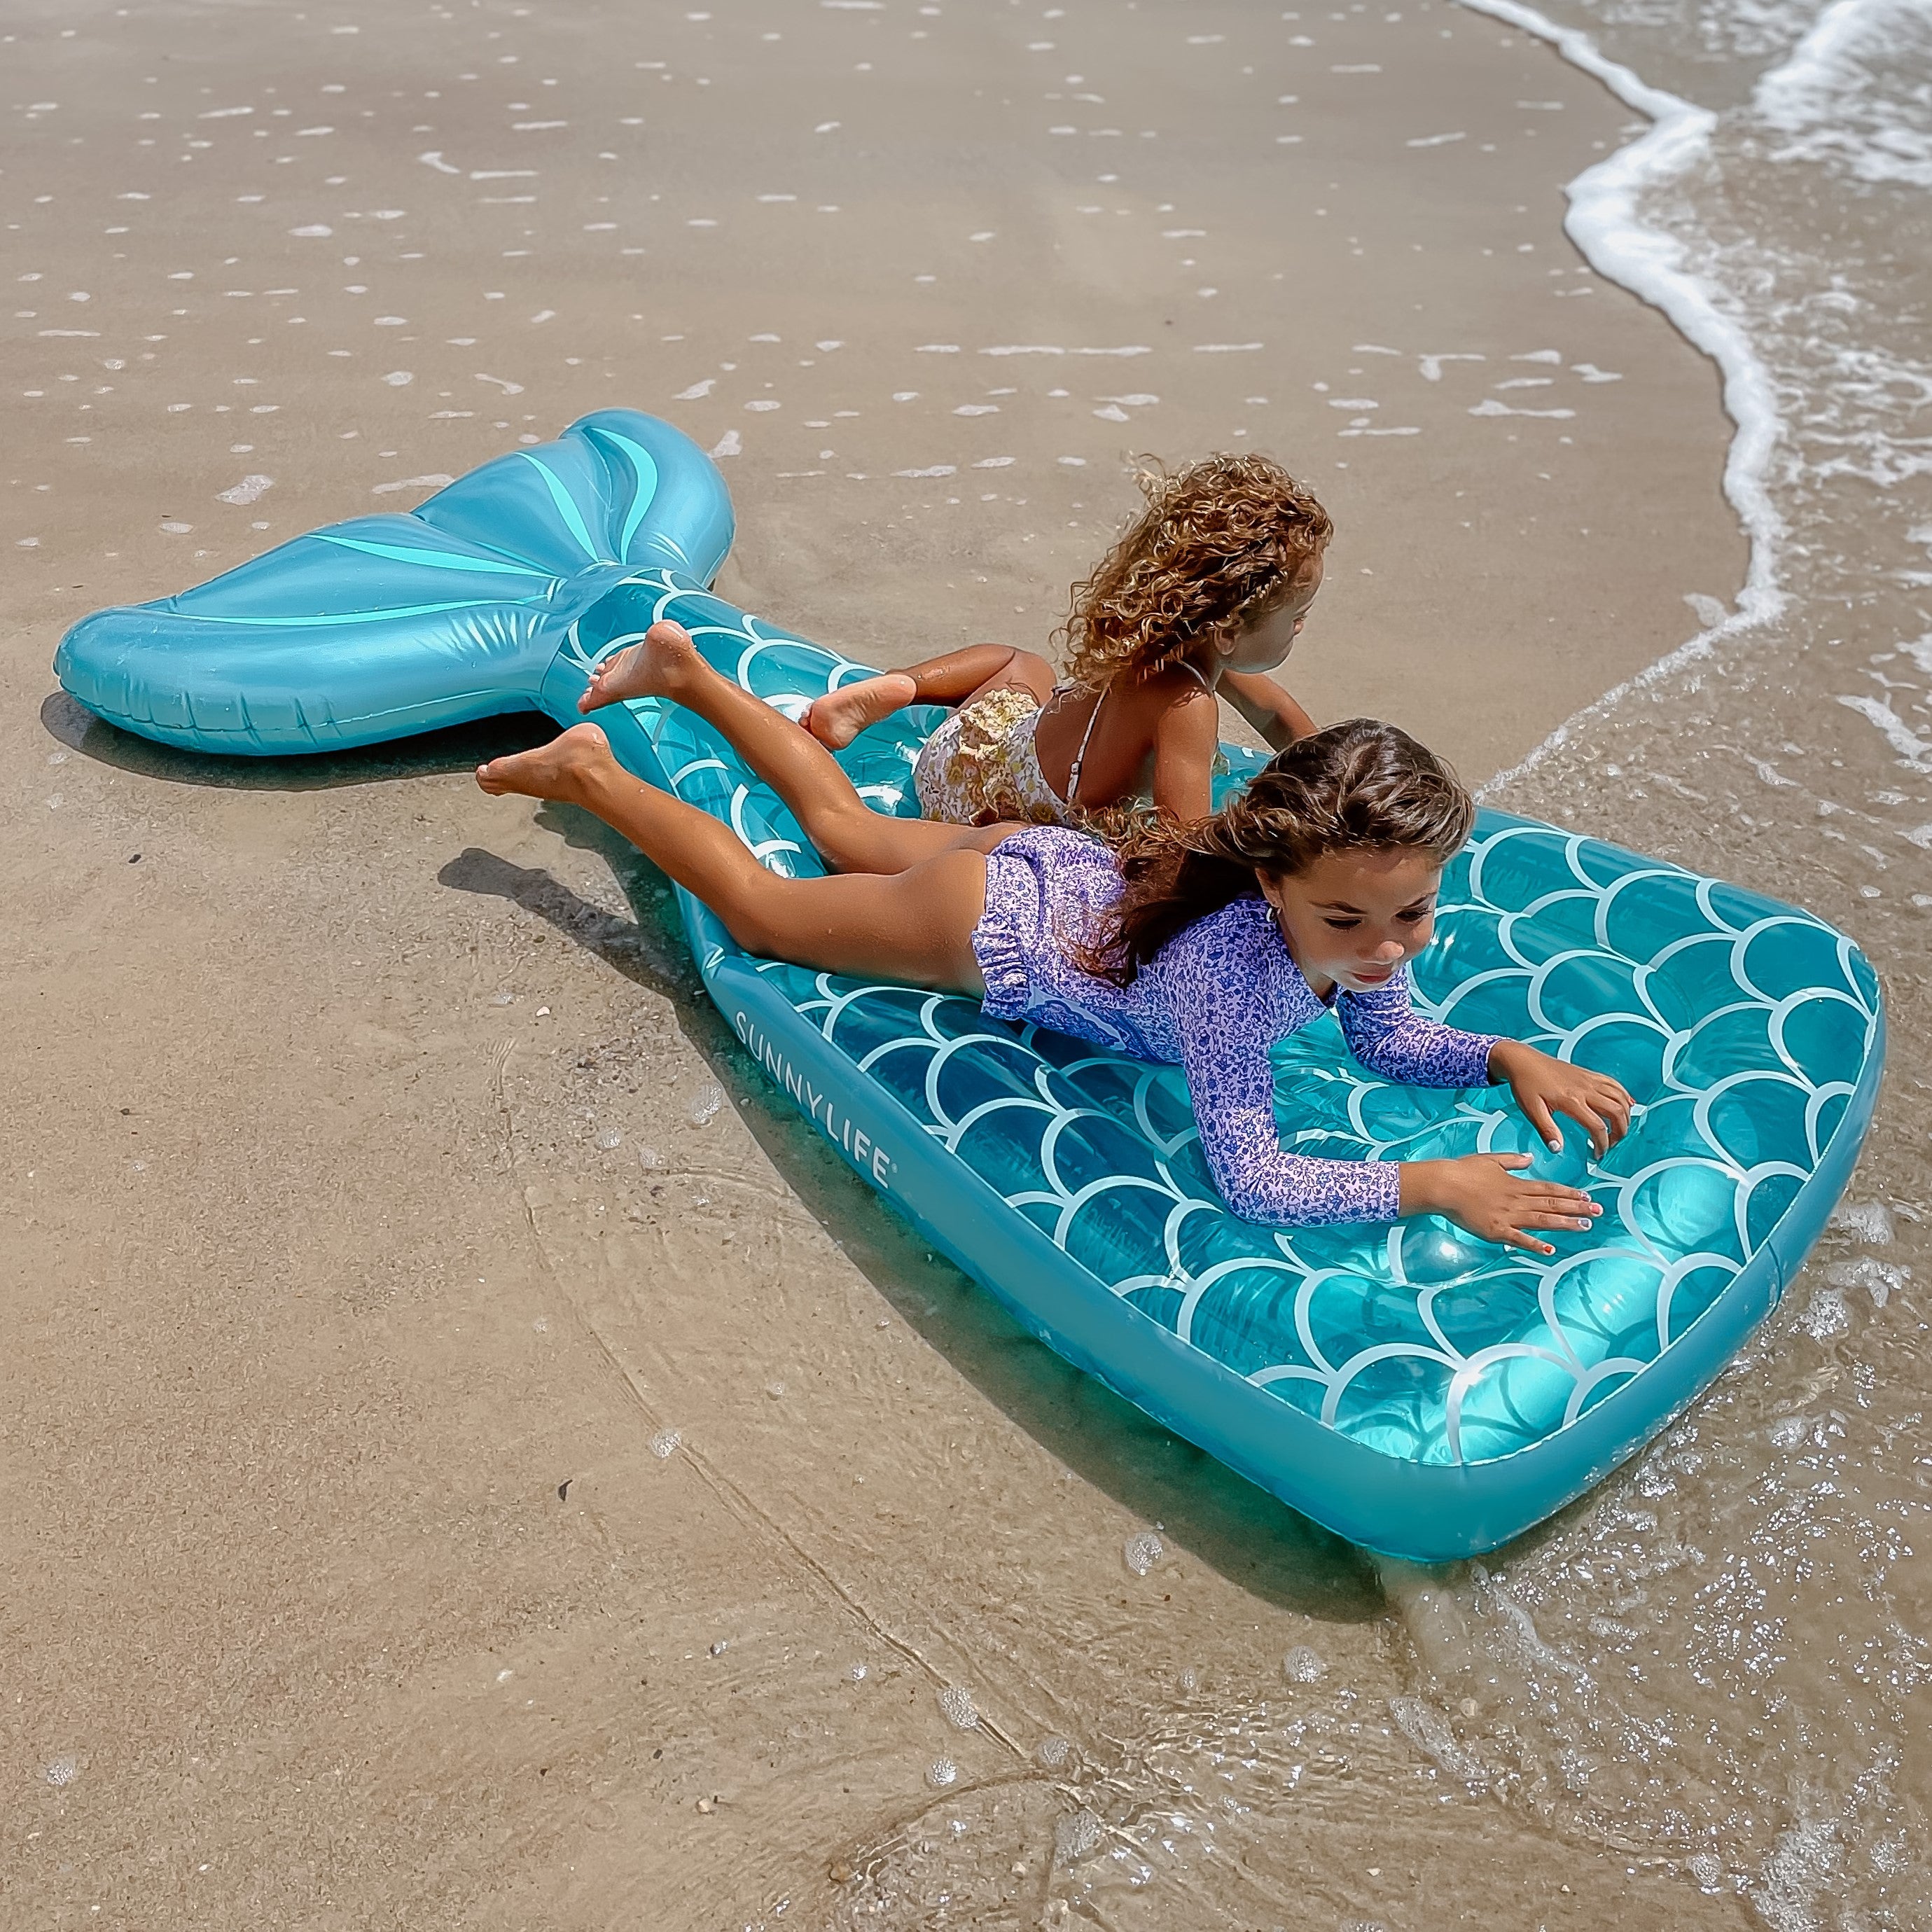 Luxe Lie-On Float | Mermaid